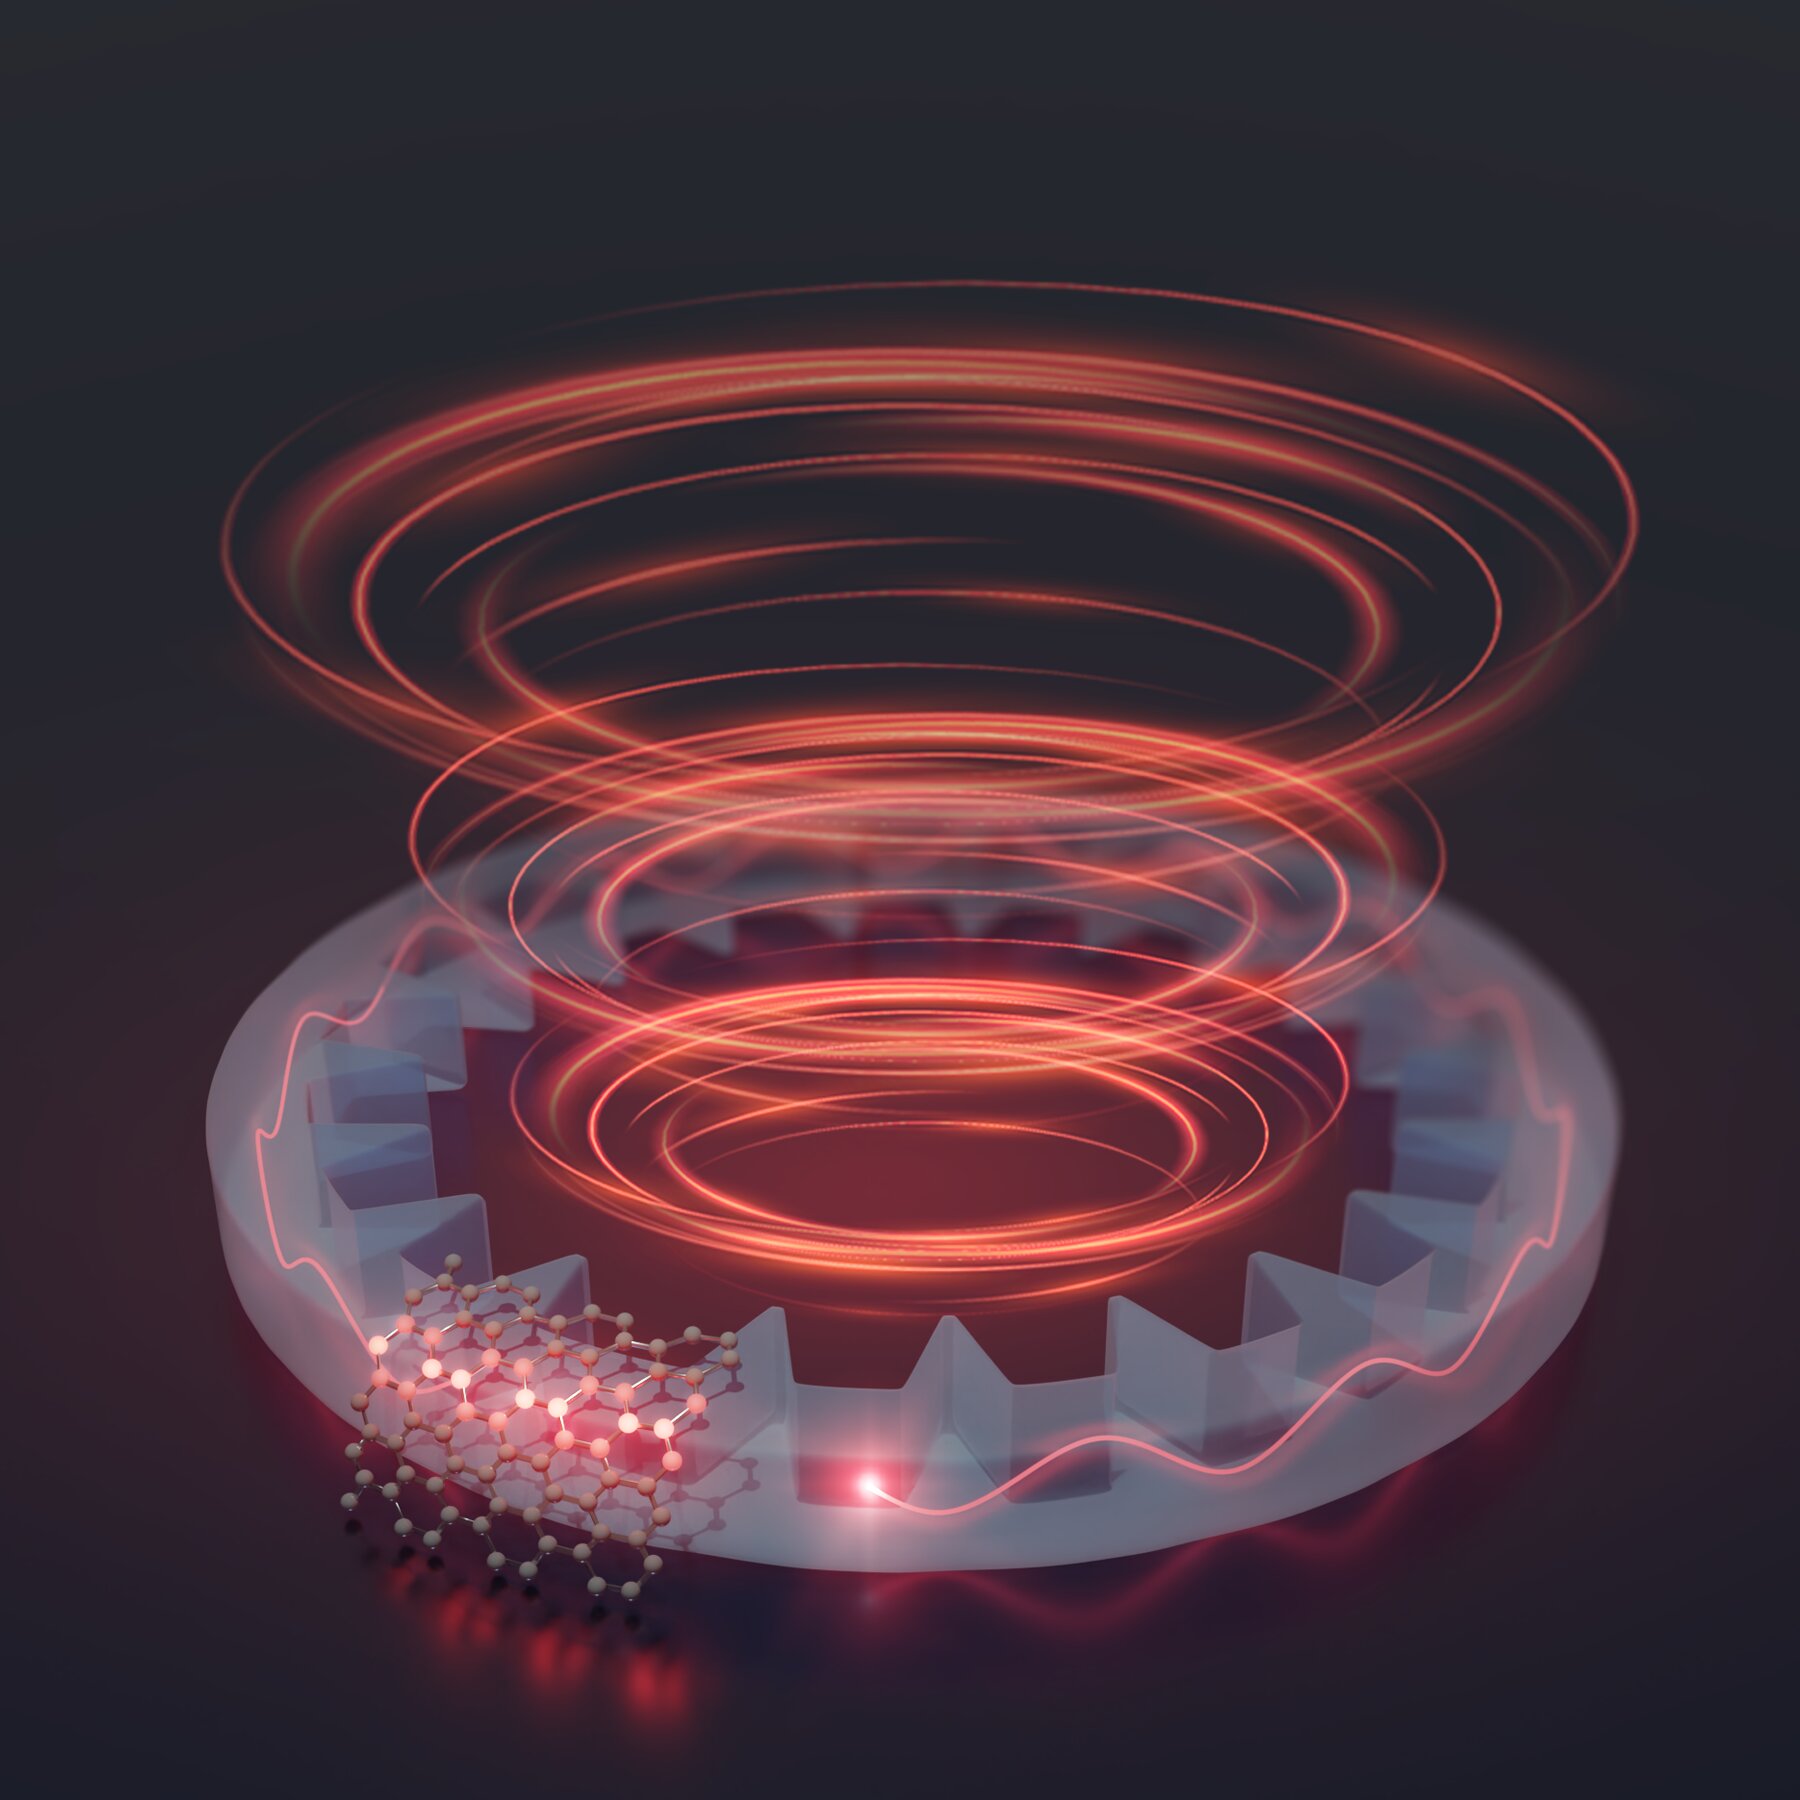 'Twisty' photons could turbocharge next-gen quantum communication